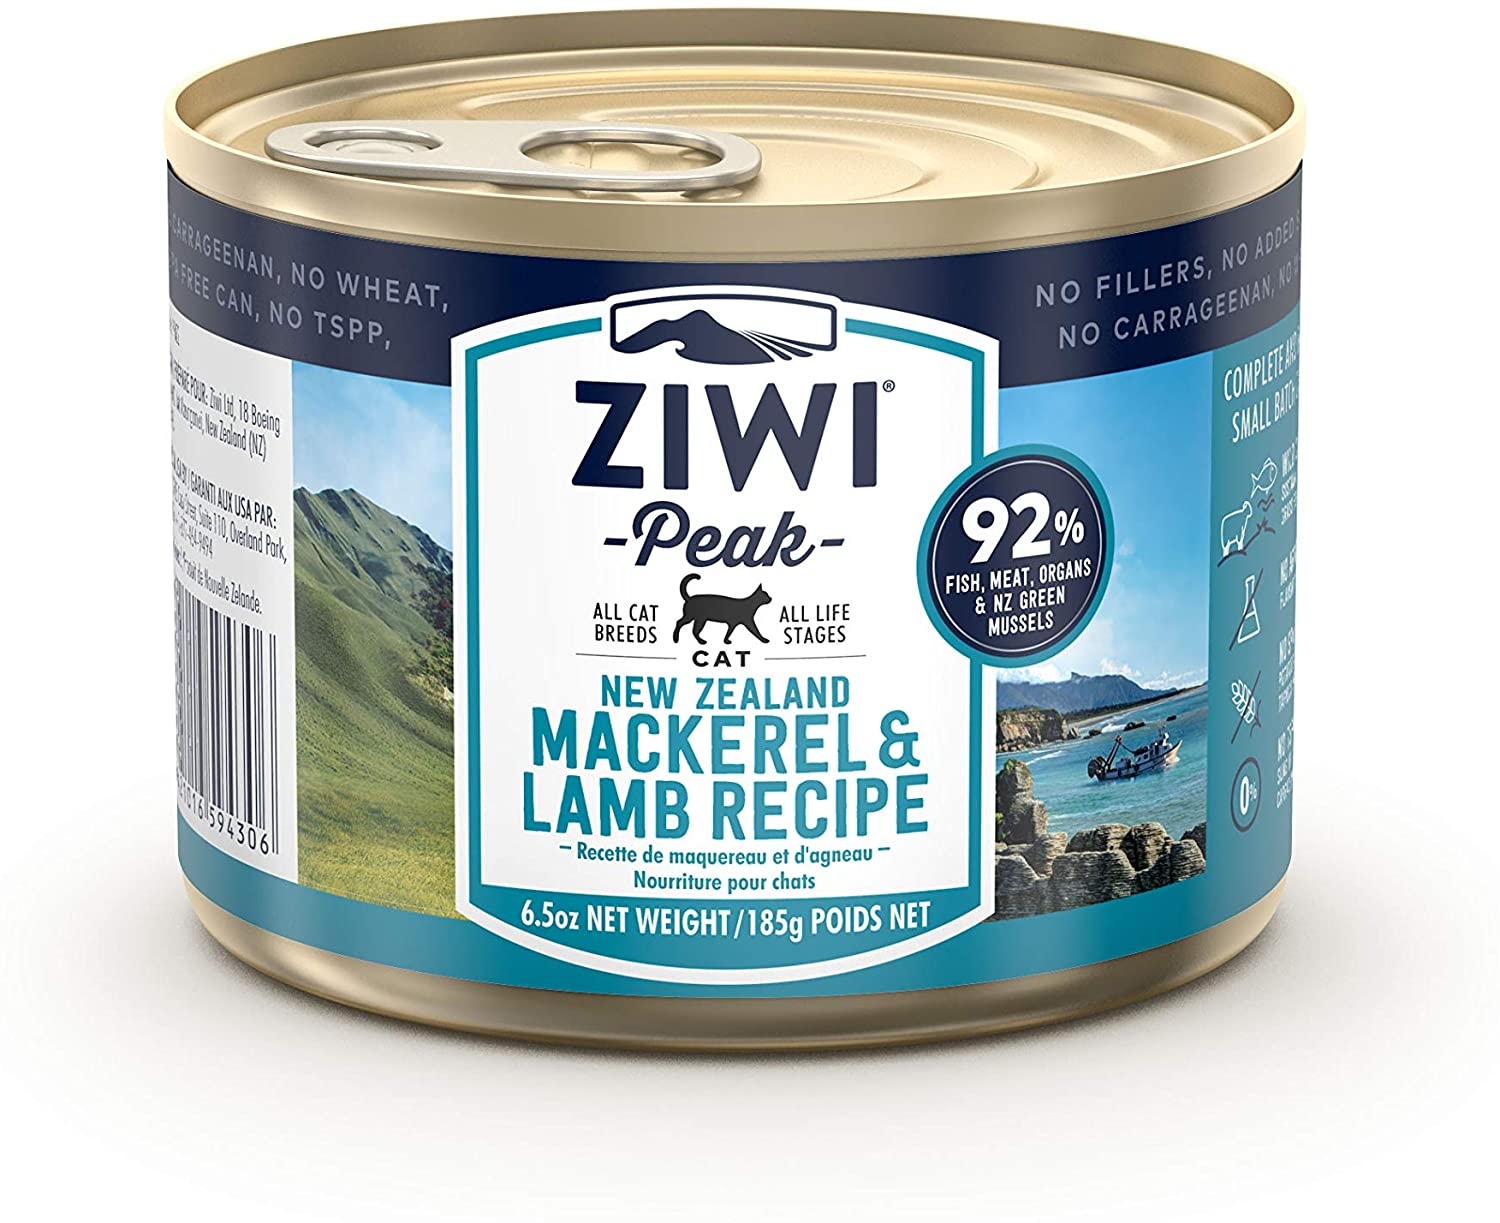  Ziwi Peak Alimento Húmedo para Gato, Sabor Caballa y Cordero - 12 latas de 185gr 